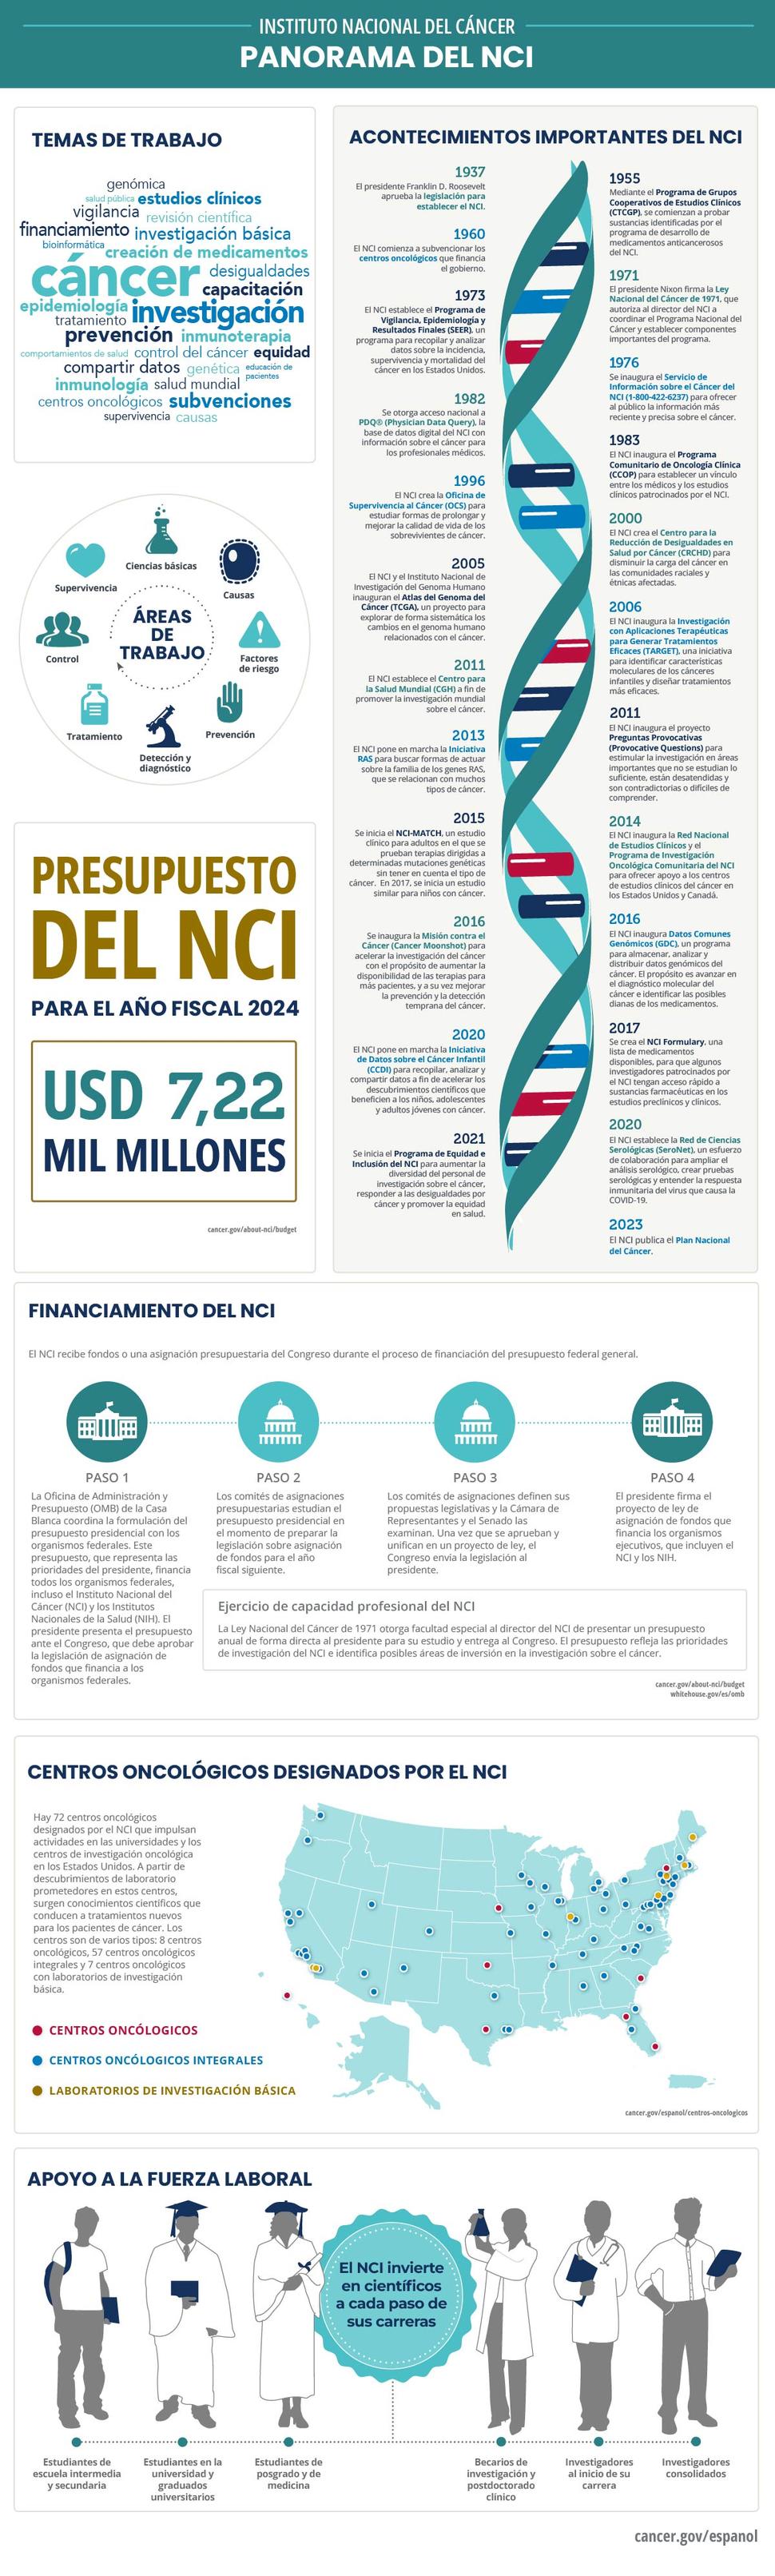 Panorama del NCI que indica los acontecimientos históricos más importantes, el financiamiento, las actividades de capacitación, y los centros oncológicos designados por el NCI.